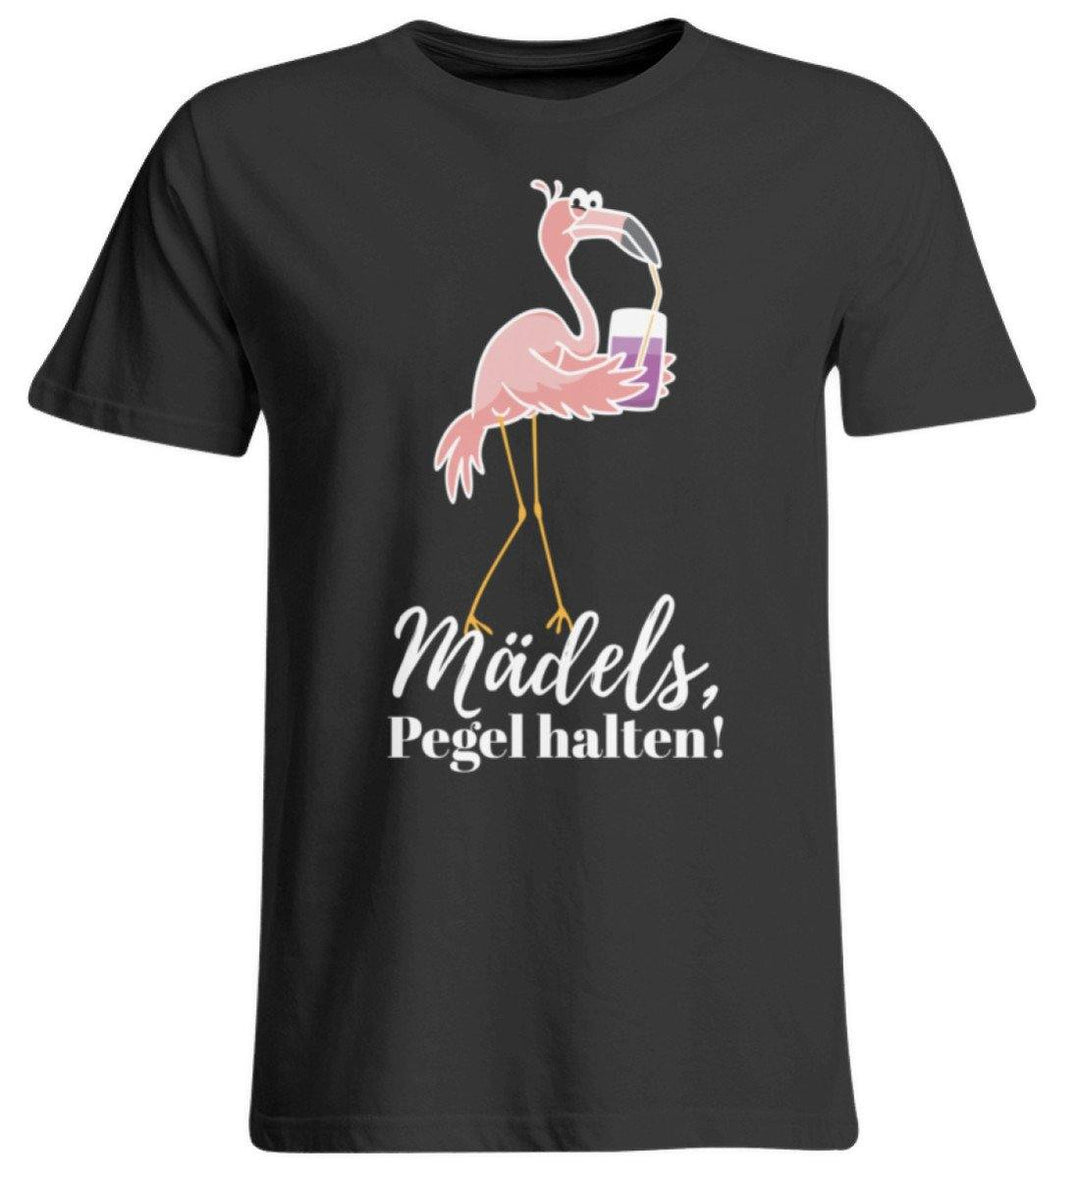 Mädels Pegel halten - Flamingo  - Übergrößenshirt - Words on Shirts Sag es mit dem Mittelfinger Shirts Hoodies Sweatshirt Taschen Gymsack Spruch Sprüche Statement